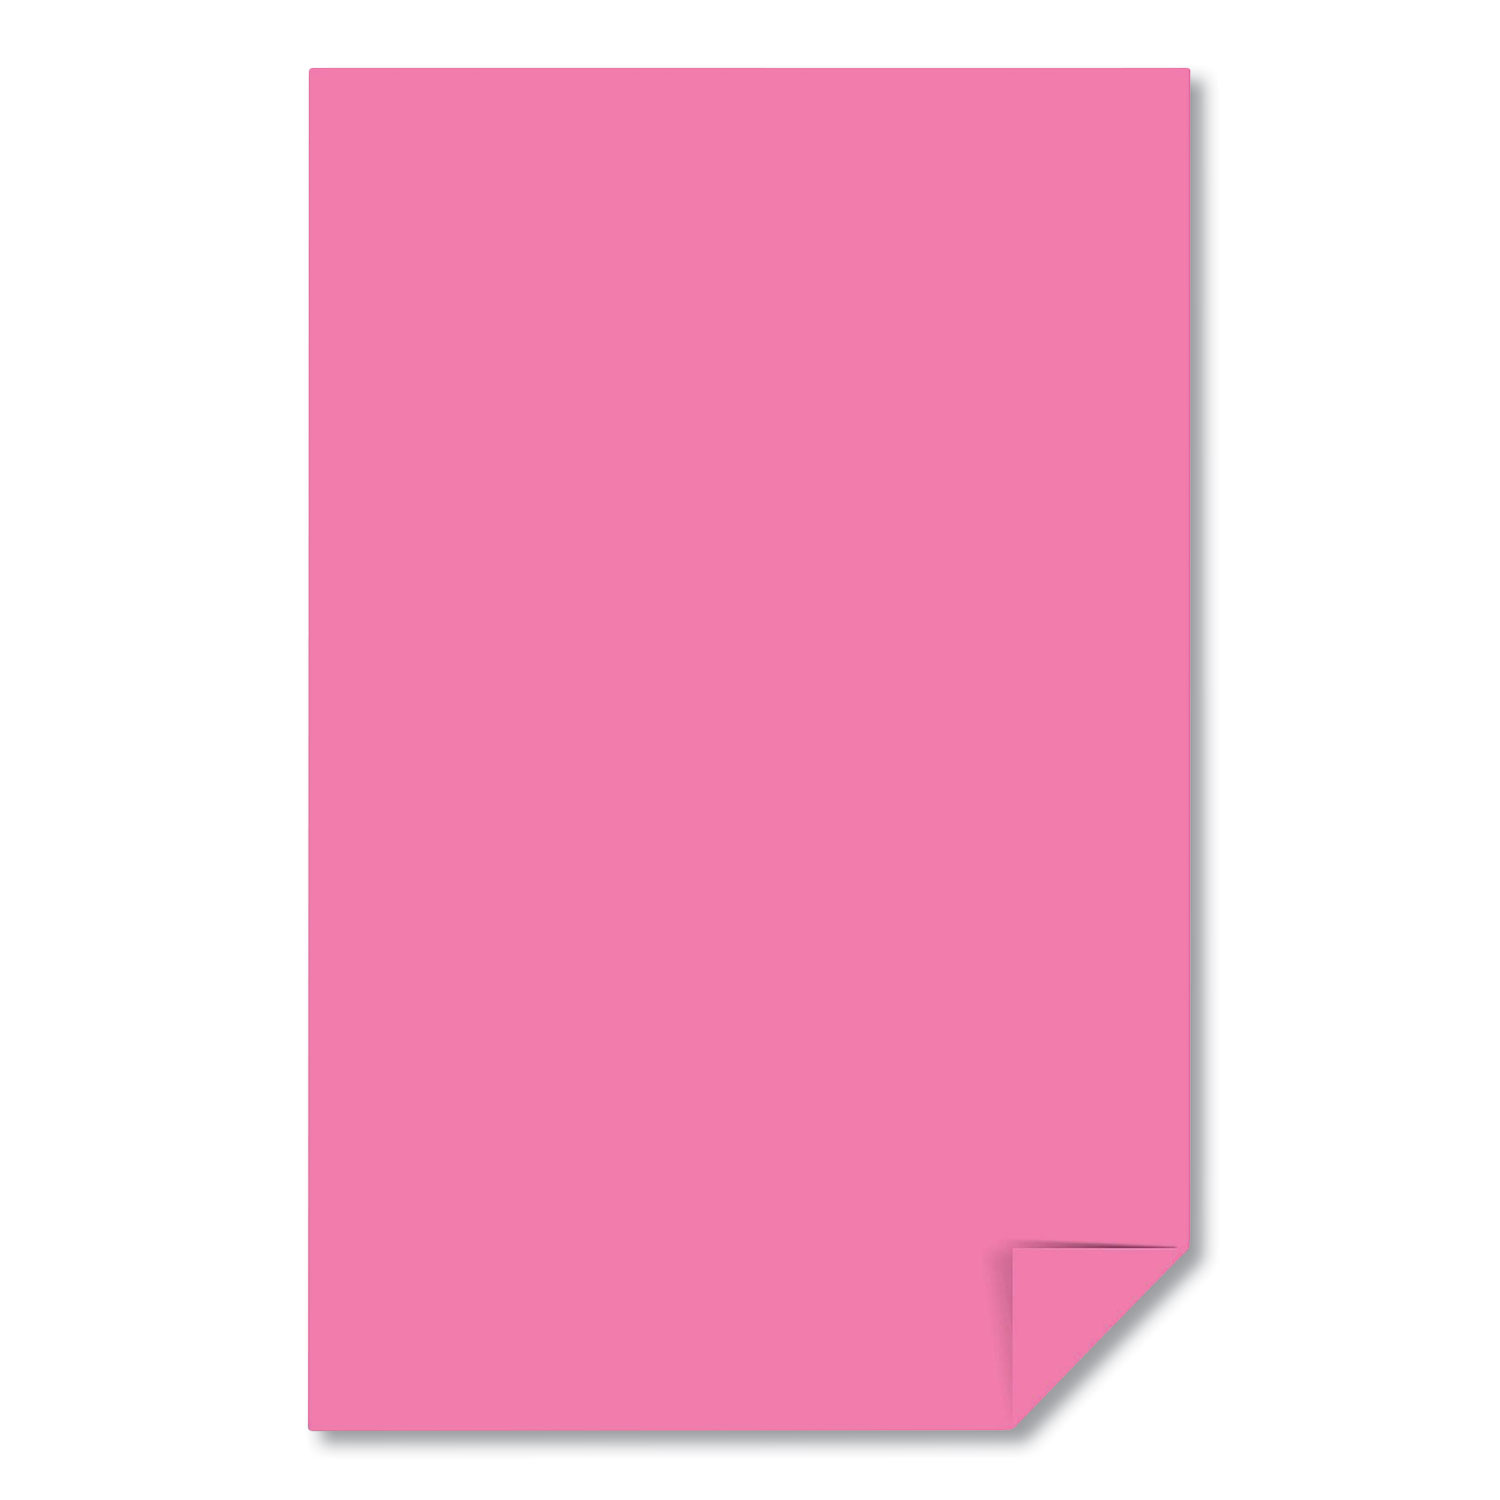  Astrobrights 21033 / 22623 Color Paper, 24 lb, 11 x 17, Pulsar Pink, 500/Ream (WAU405148) 